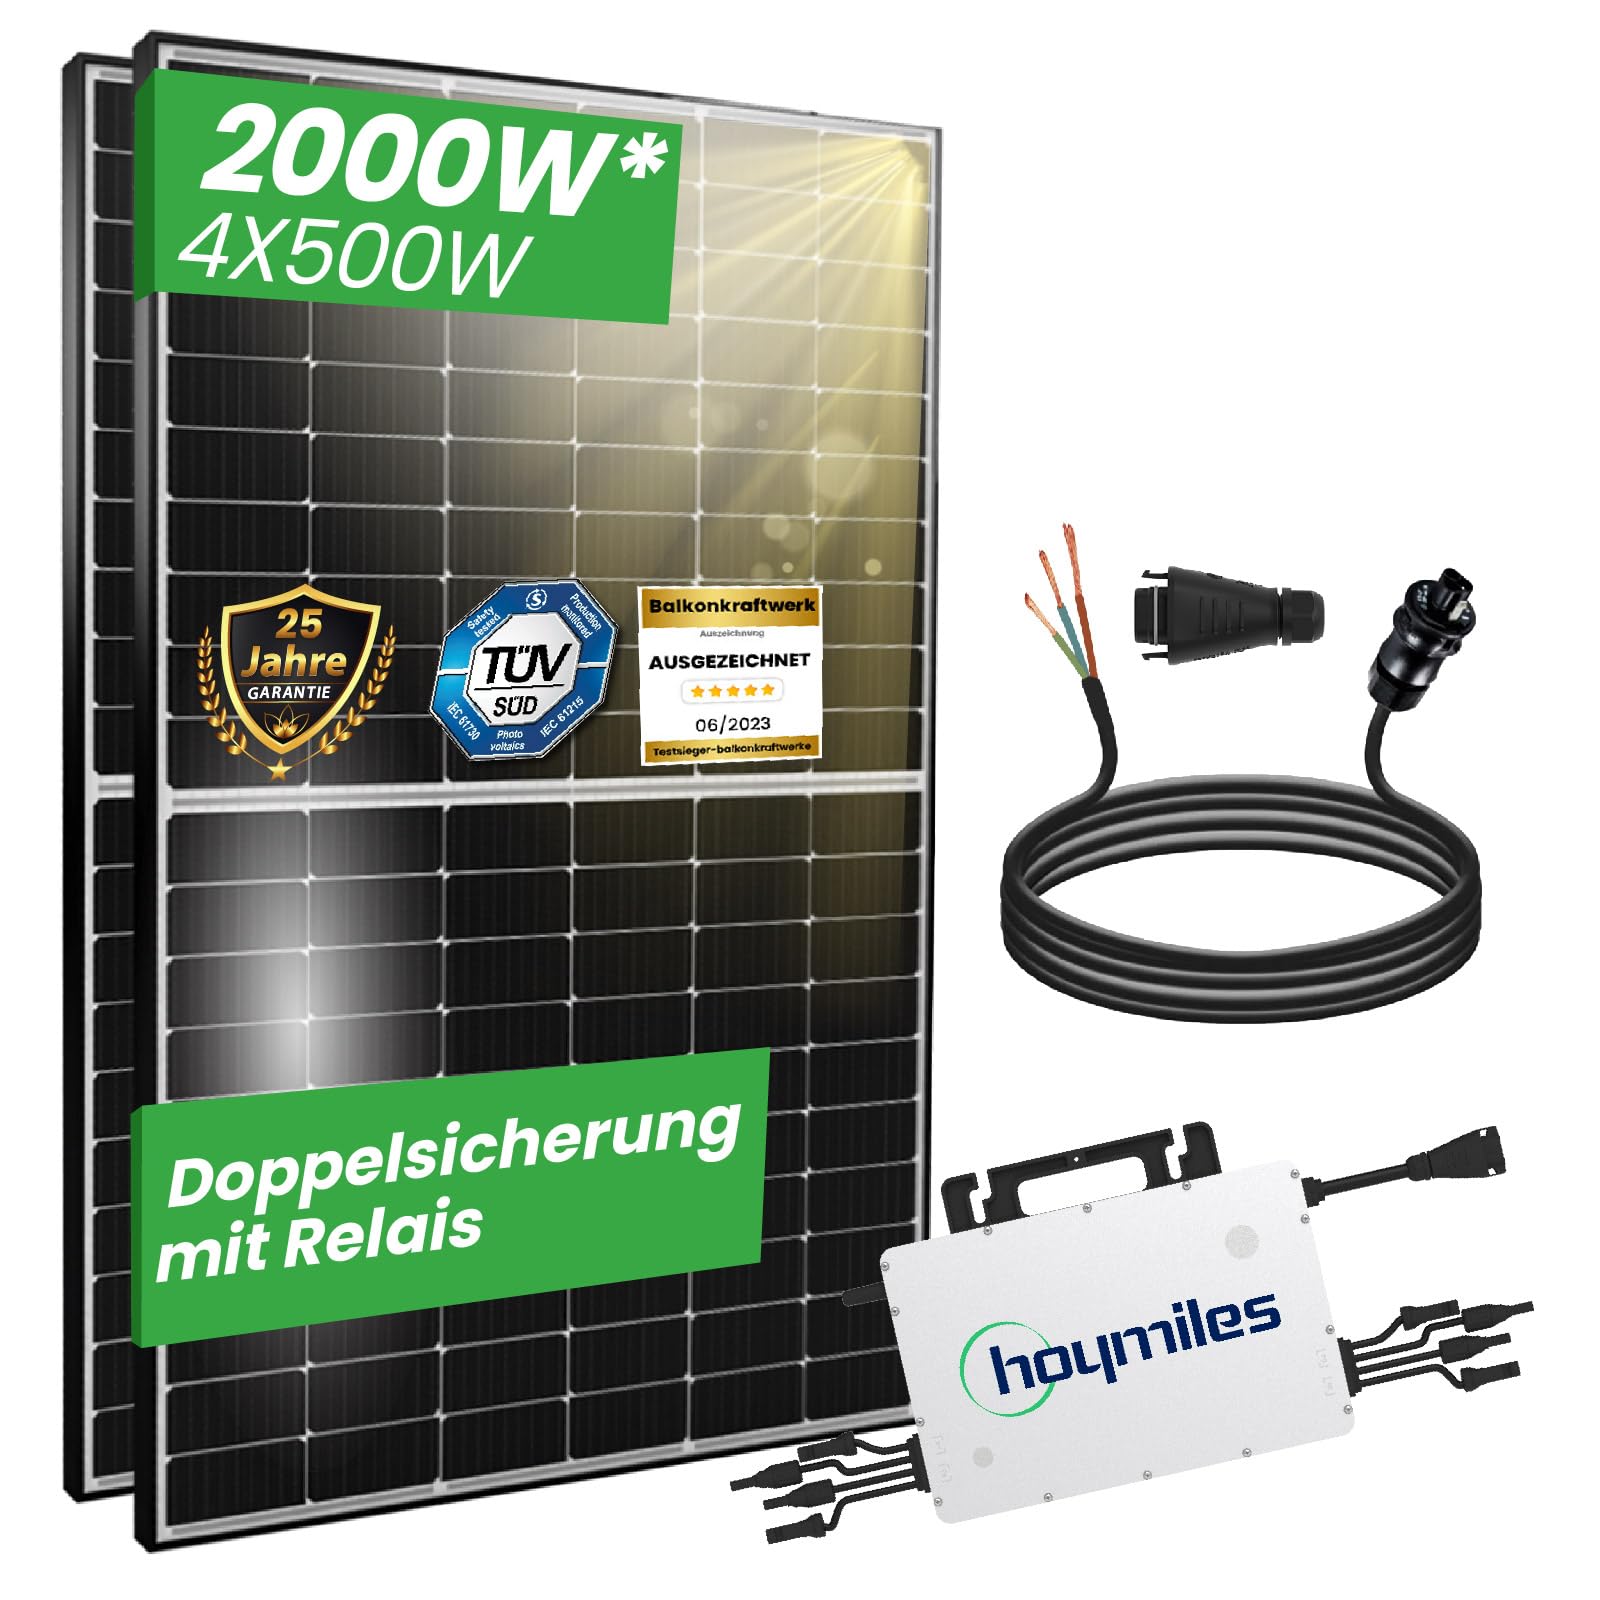 CamperGold® 2000W Photovoltaik Balkonkraftwerk mit EPP 500W Solarmodule, Hoymiles HMS-1600-4T Wechselrichter und 10m Wielandstecker